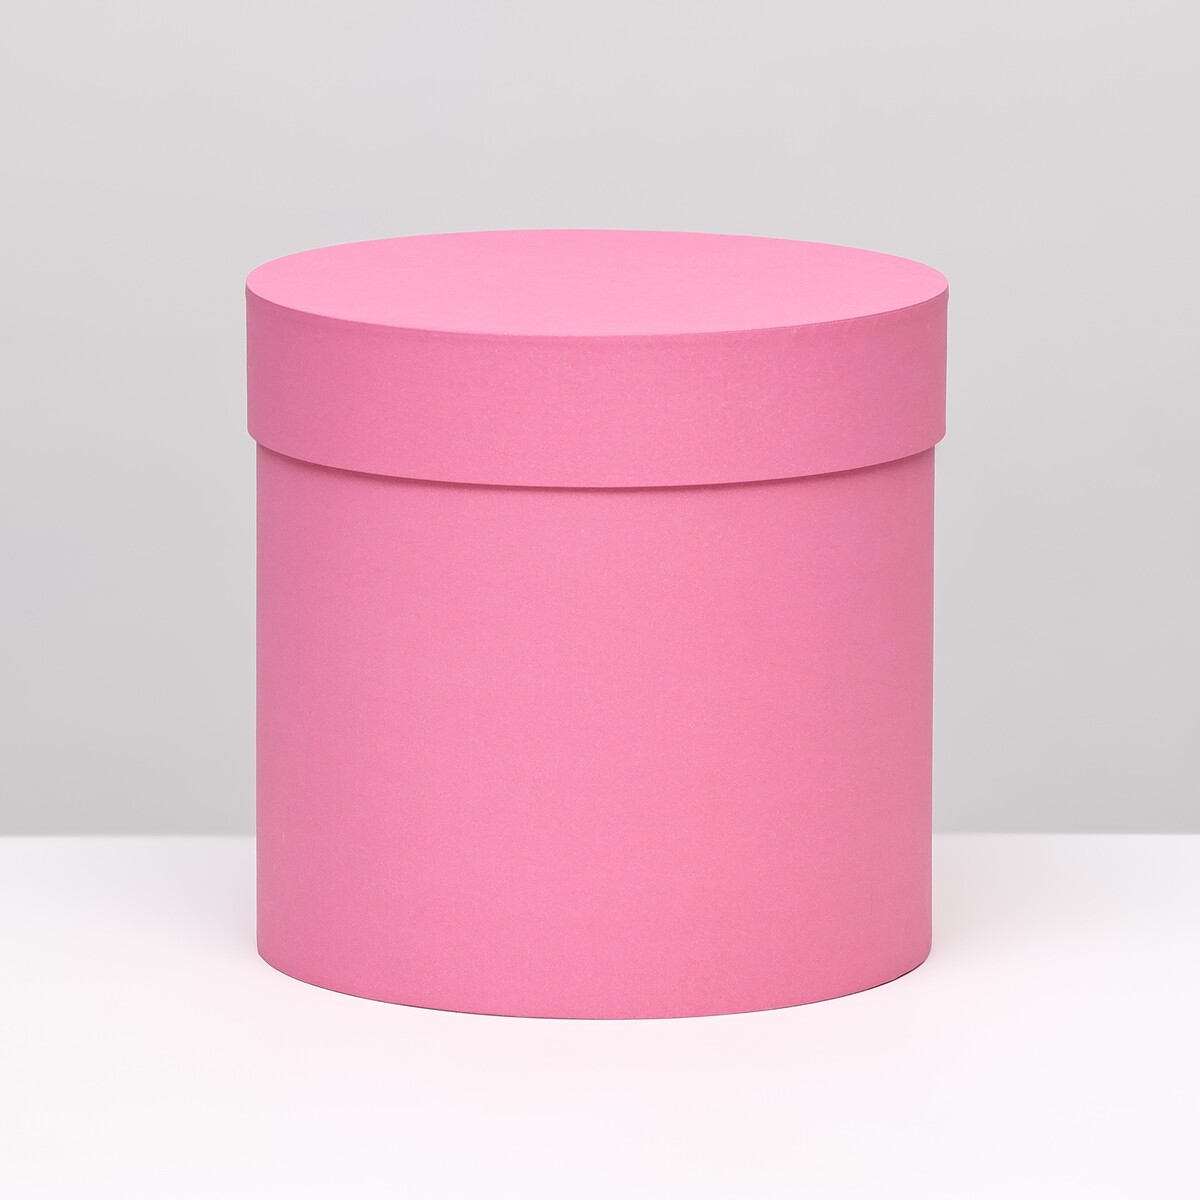 Шляпная коробка розовая, 18 х 18 см v plans женский планировщик новая я розовая нежность